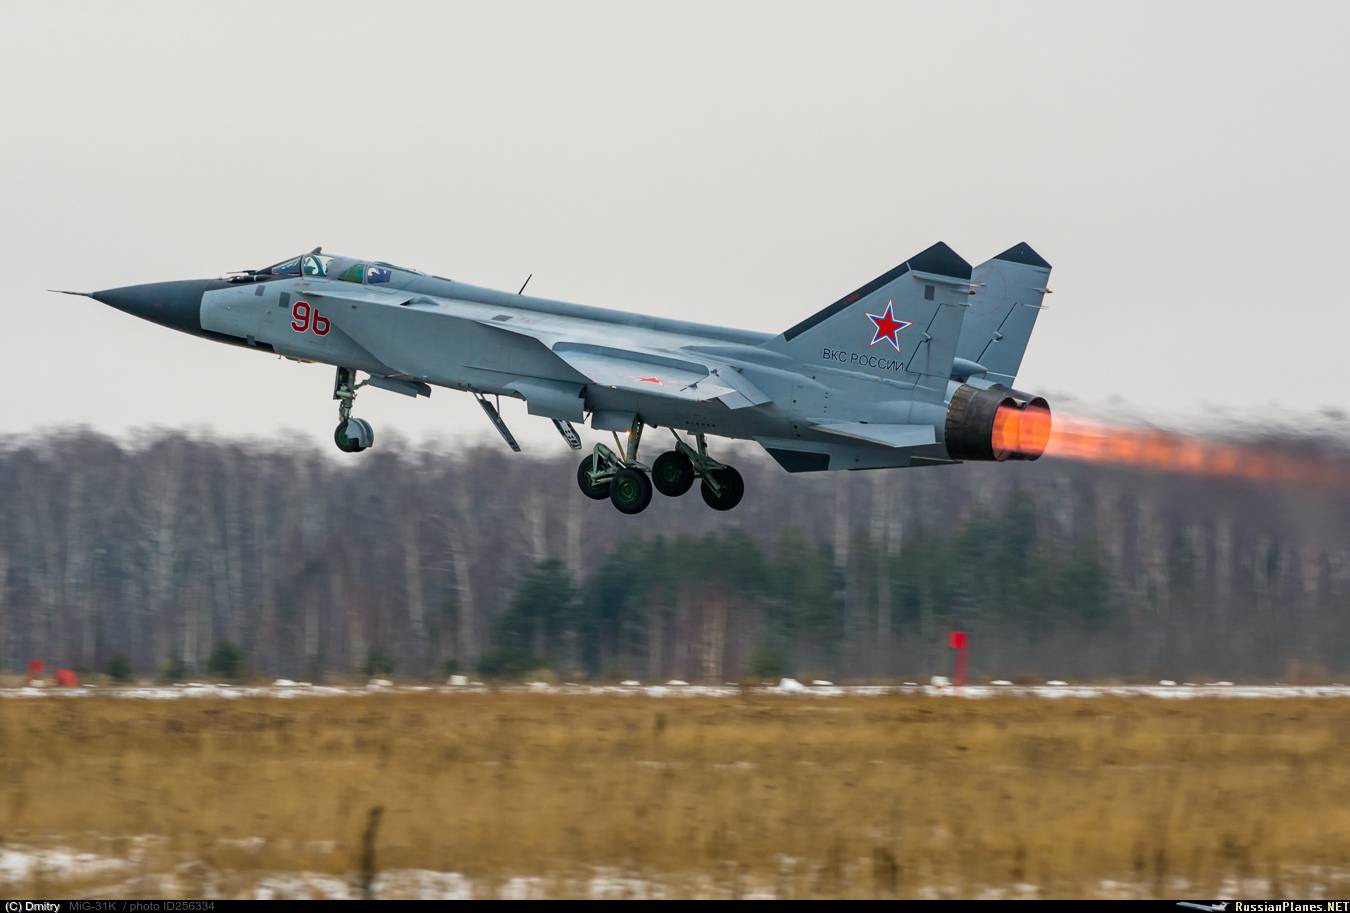 Миг-31: ​​характеристики и скорость самолета-перехватчика, боевое применение